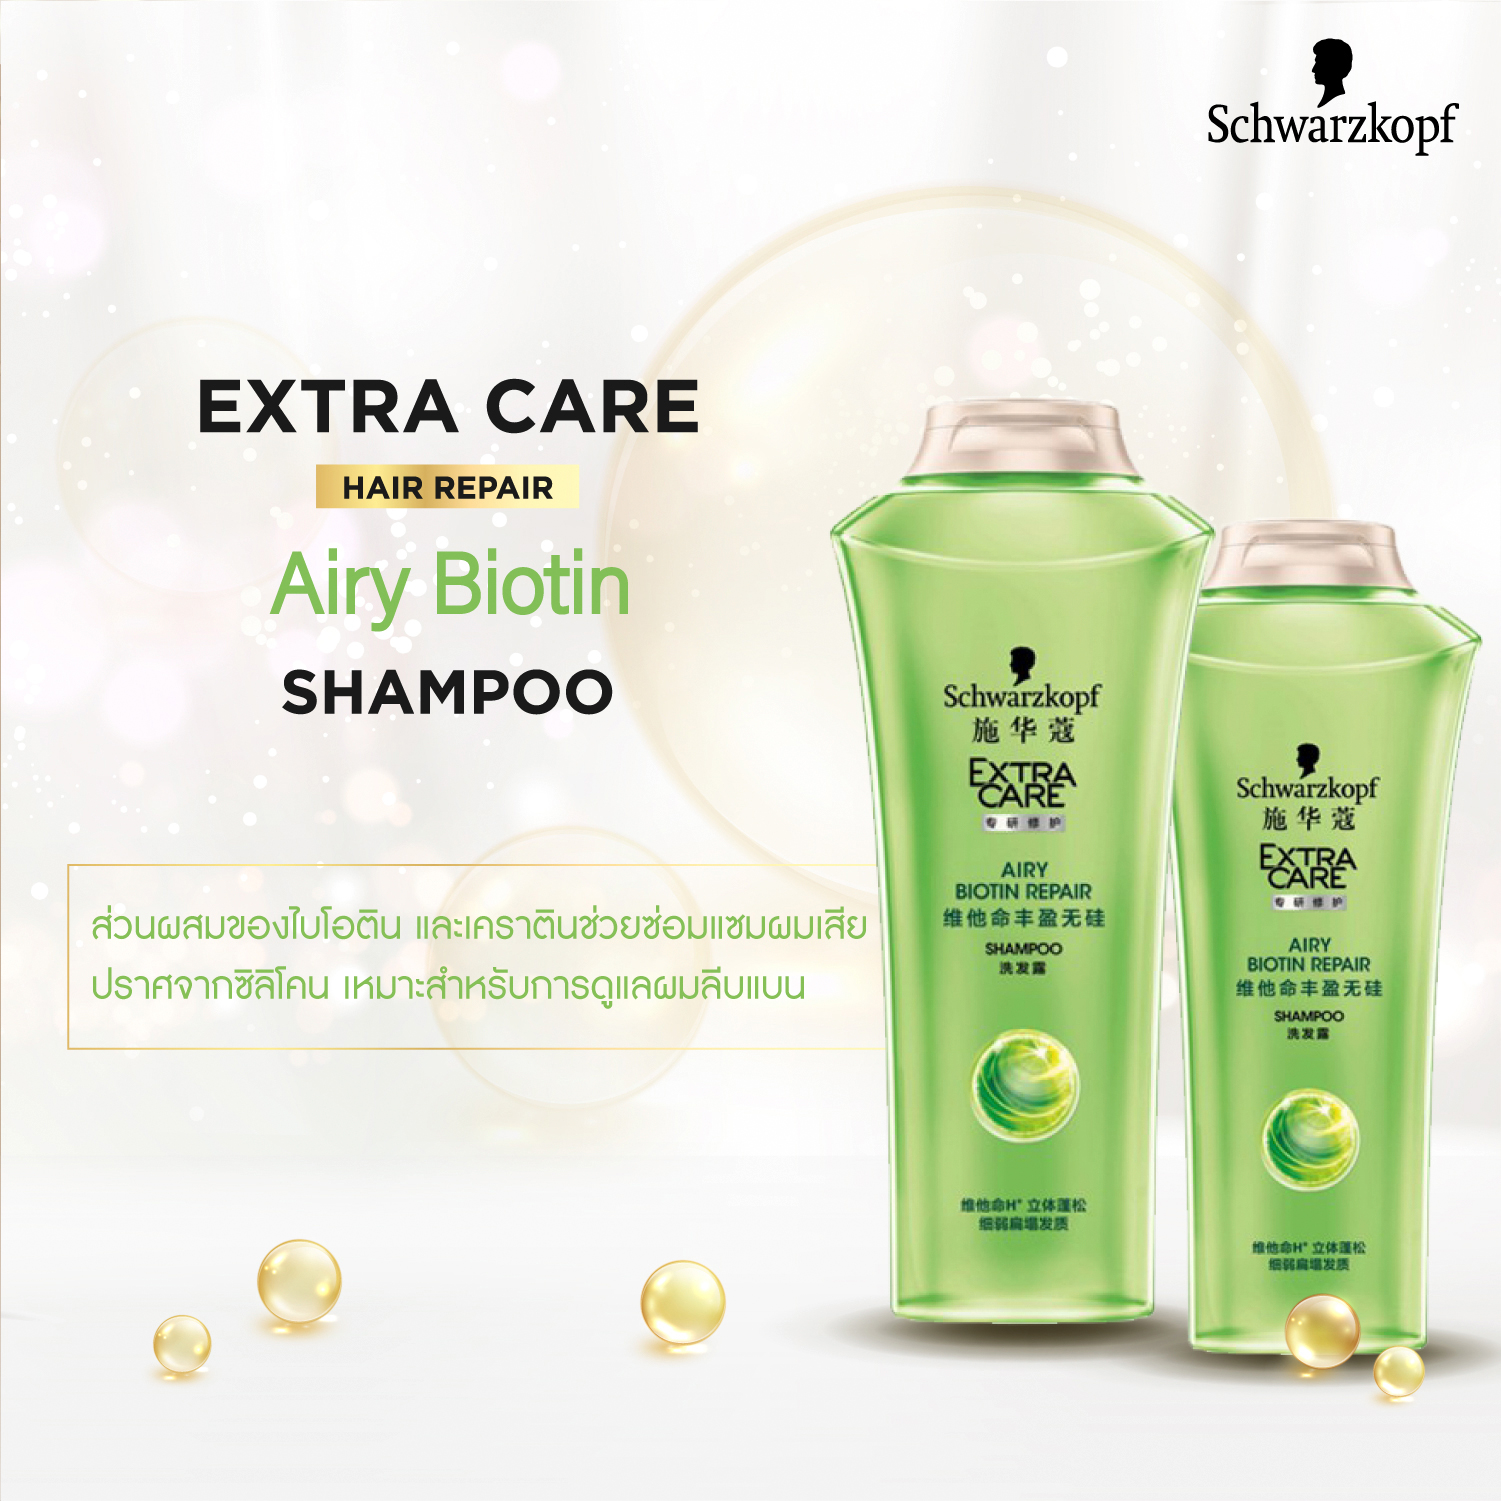 [แพ็ก 2]  Schwarzkopf Extra Care Airy Biotin Shampoo 400 ml. 2 pcs. ชวาร์สคอฟ เอ็กซ์ตร้าแคร์ แอรี่ ไบโอติน รีแพร์ แชมพู 400 มล. 2 ขวด